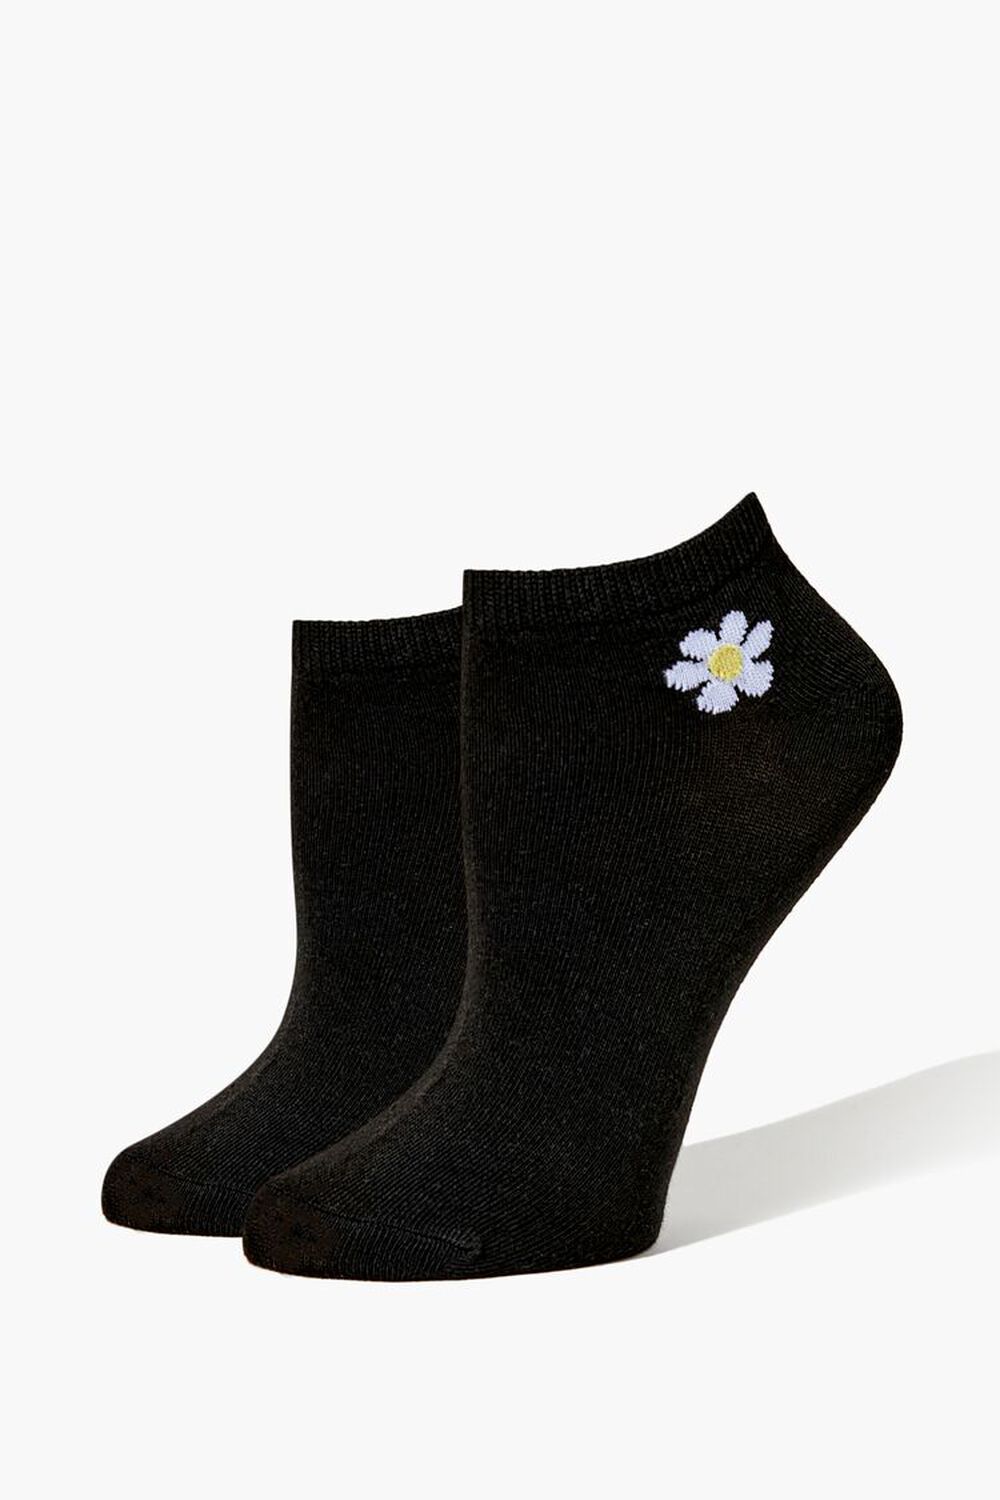 Floral Ankle Socks, image 1